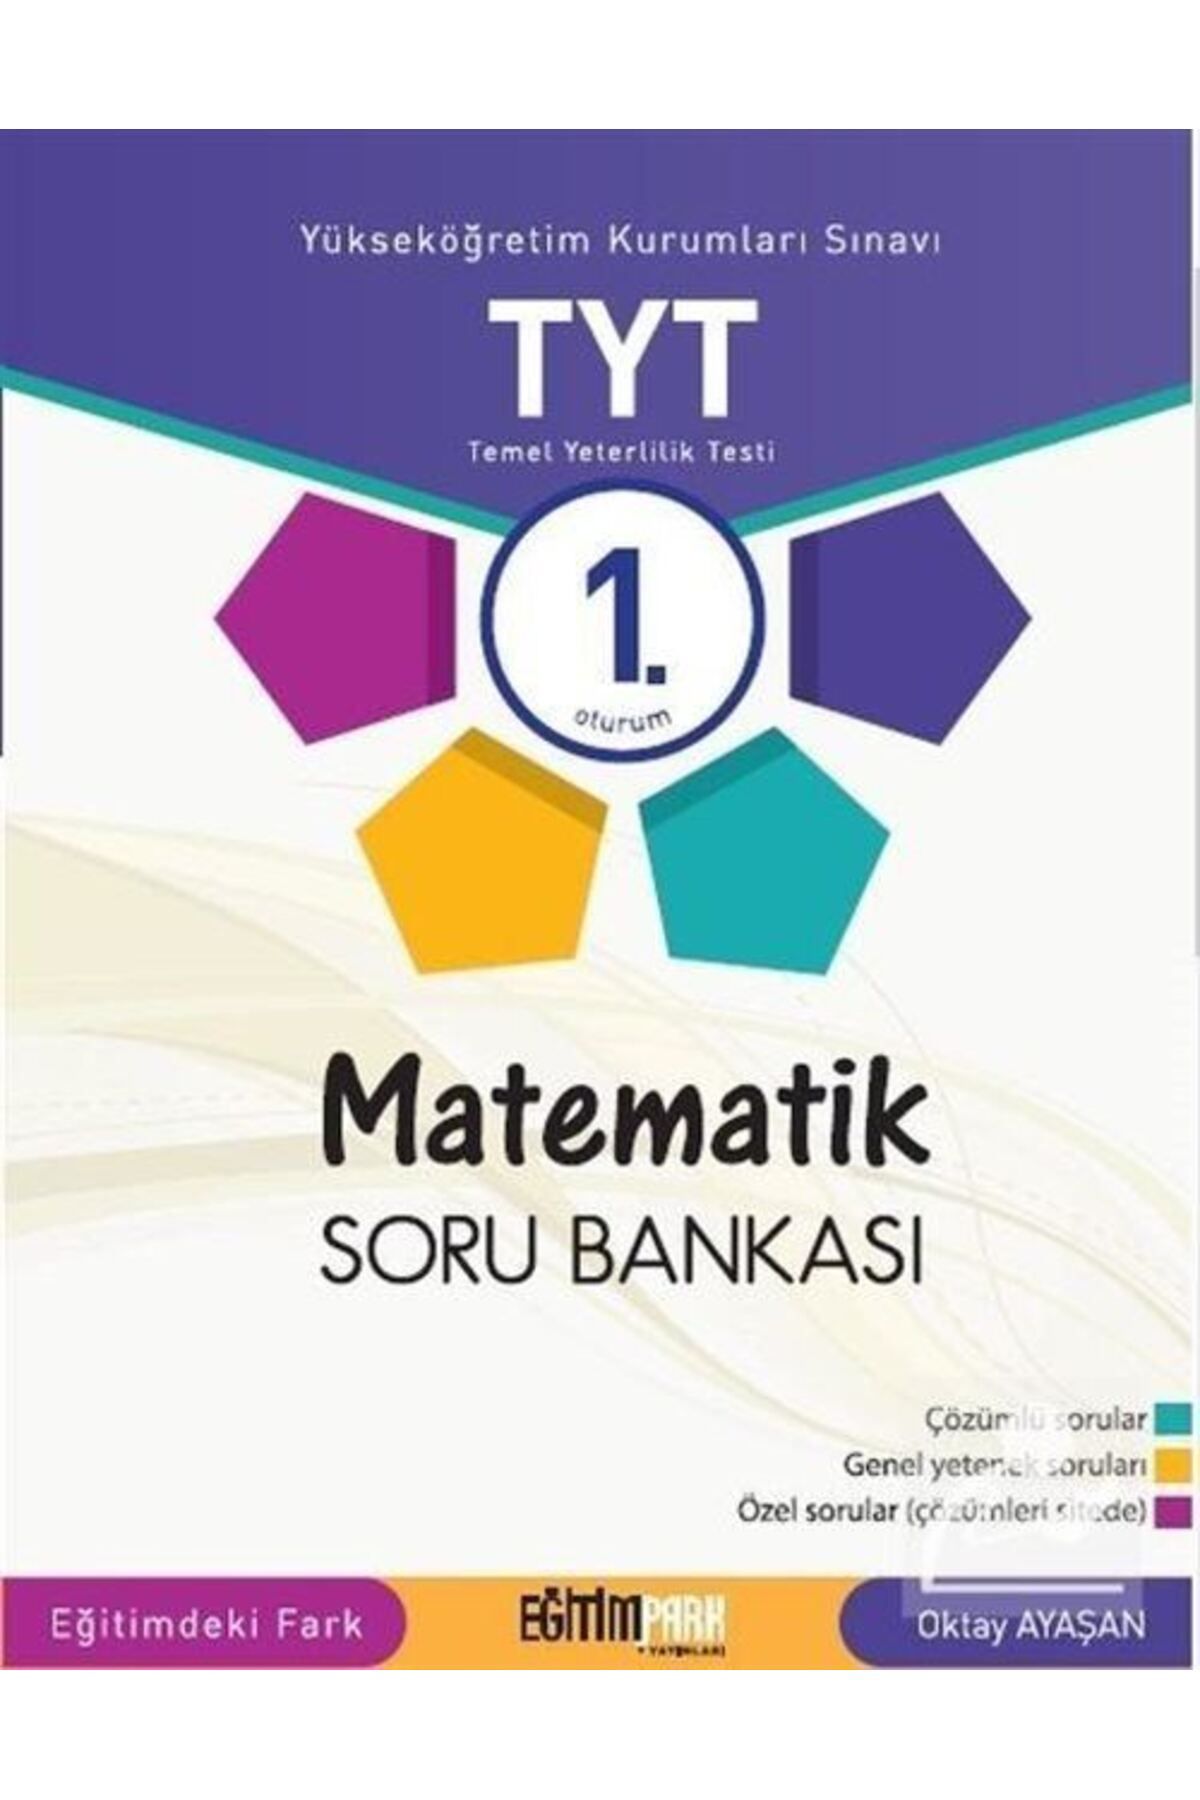 EĞİTİM PARK YAYINLARI Tyt Matematik Soru Bankası